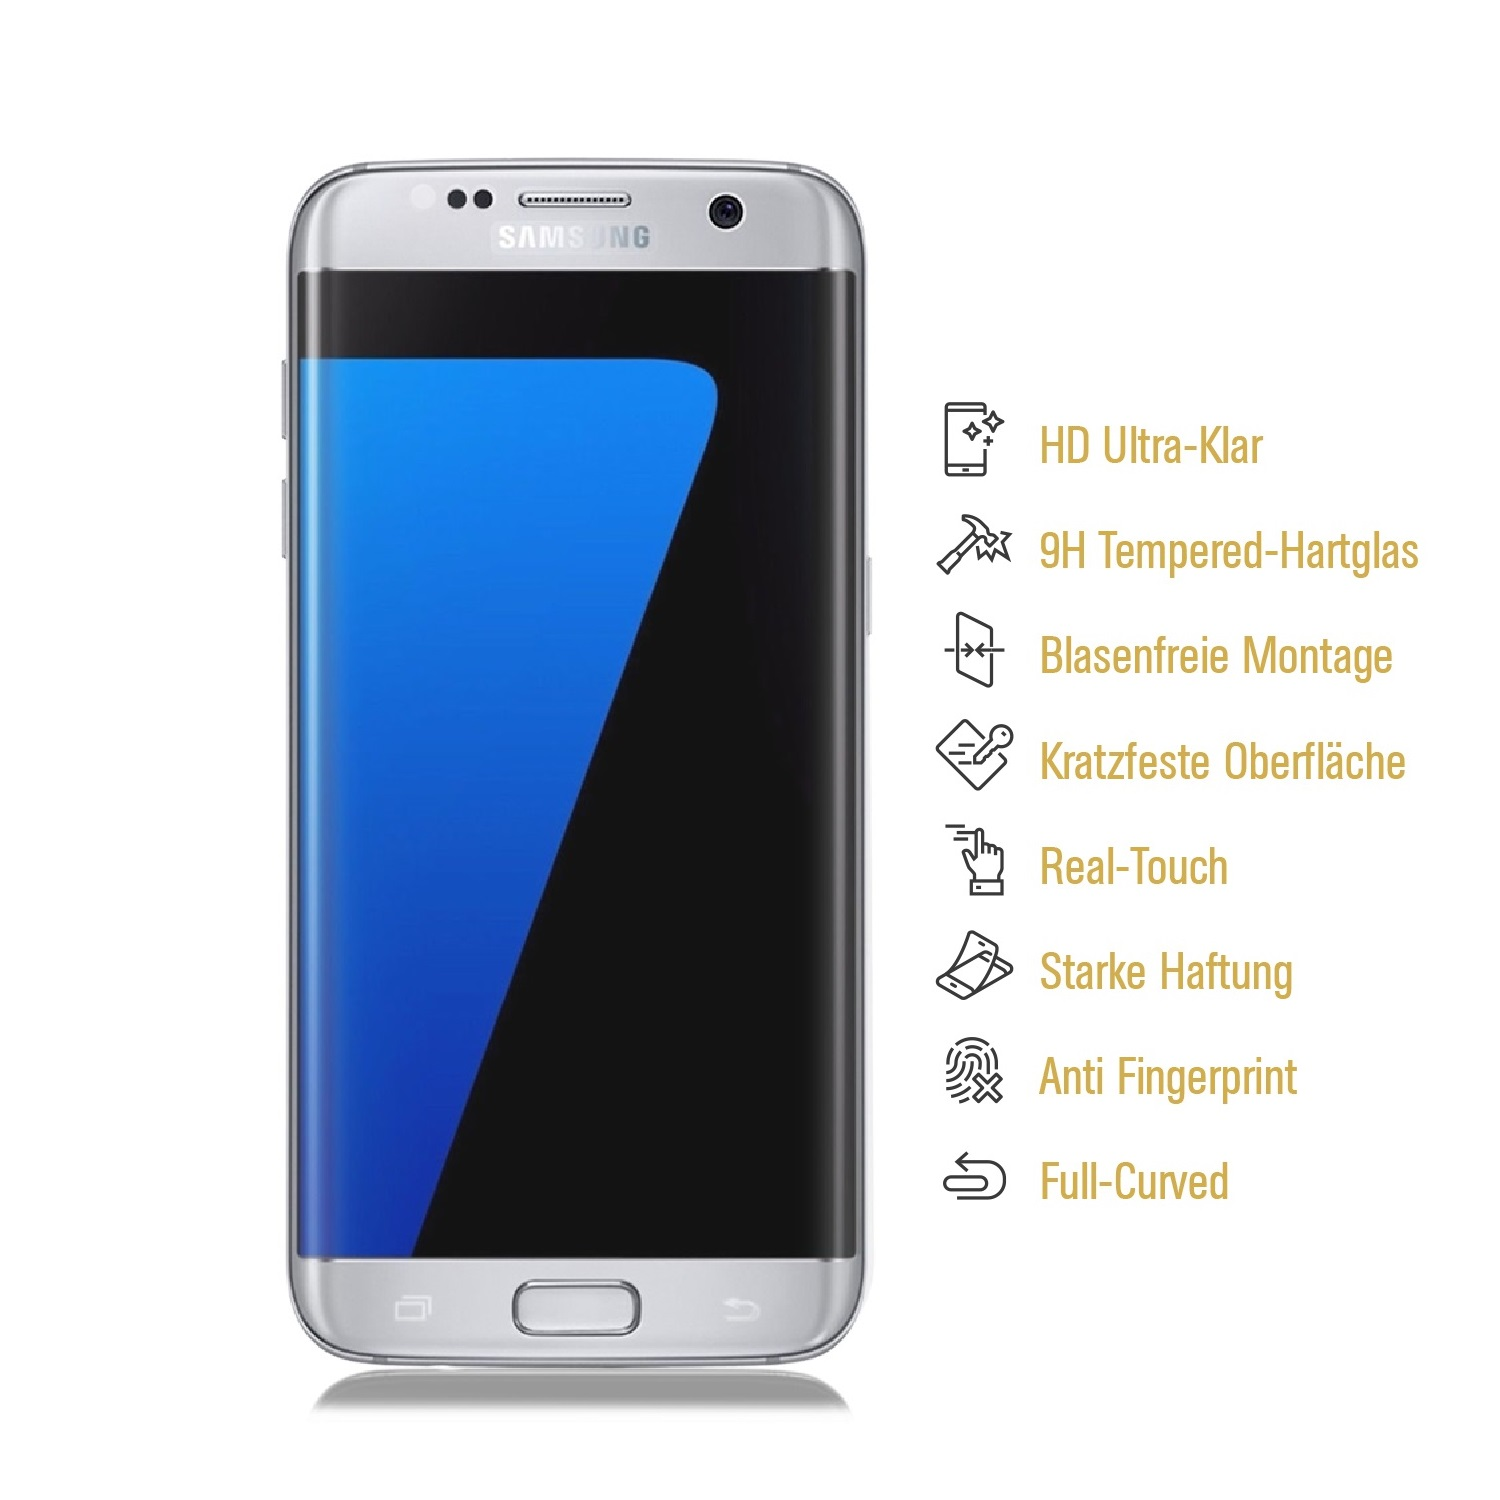 Edge) KLAR S7 Hartglas PROTECTORKING FULL Samsung Galaxy CURVED Displayschutzfolie(für Schutzglas 9H 6x